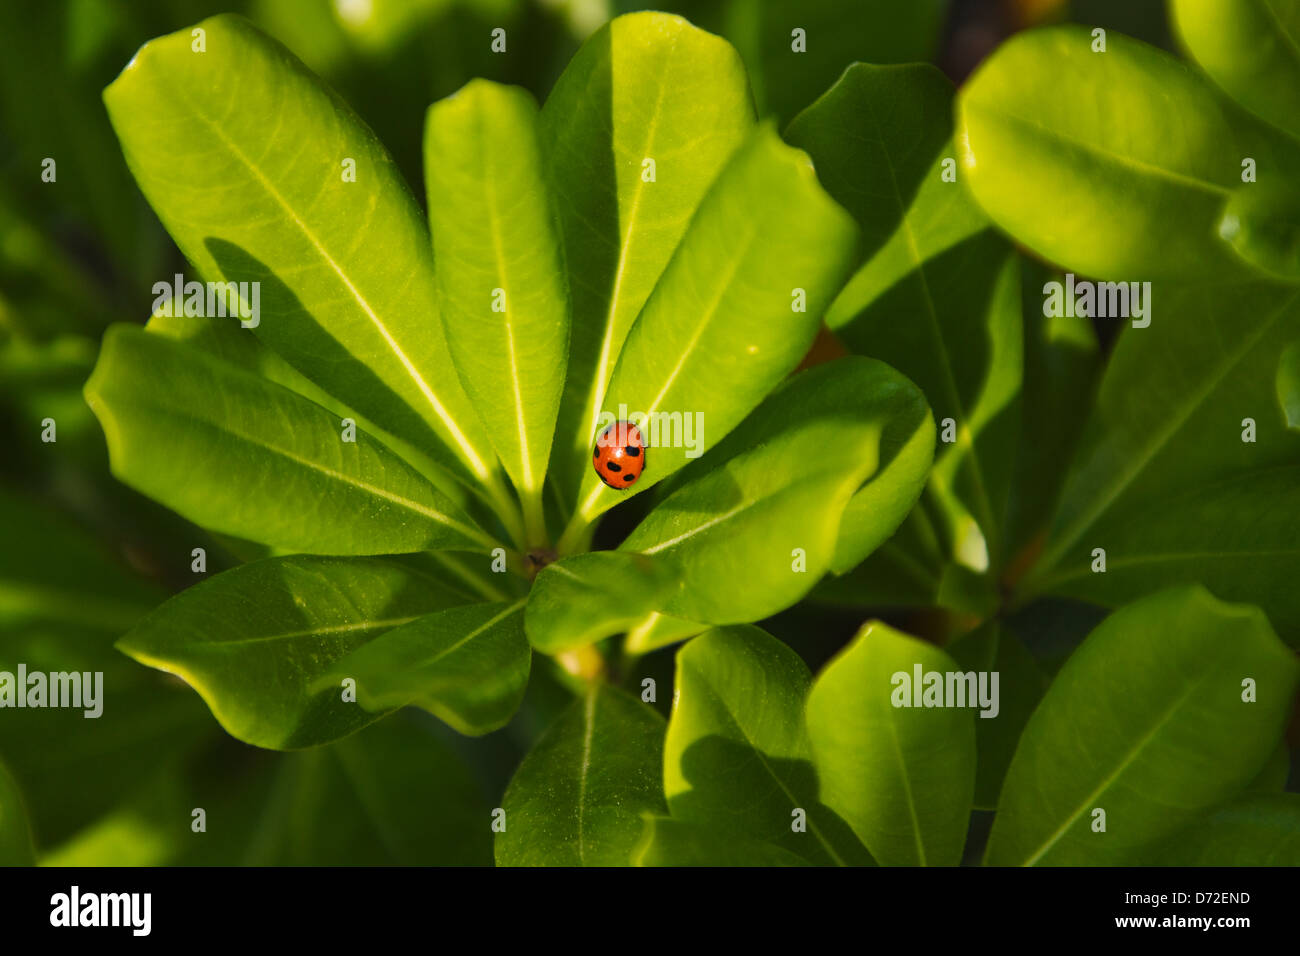 Ladybug on green leaf, Tunisia Stock Photo